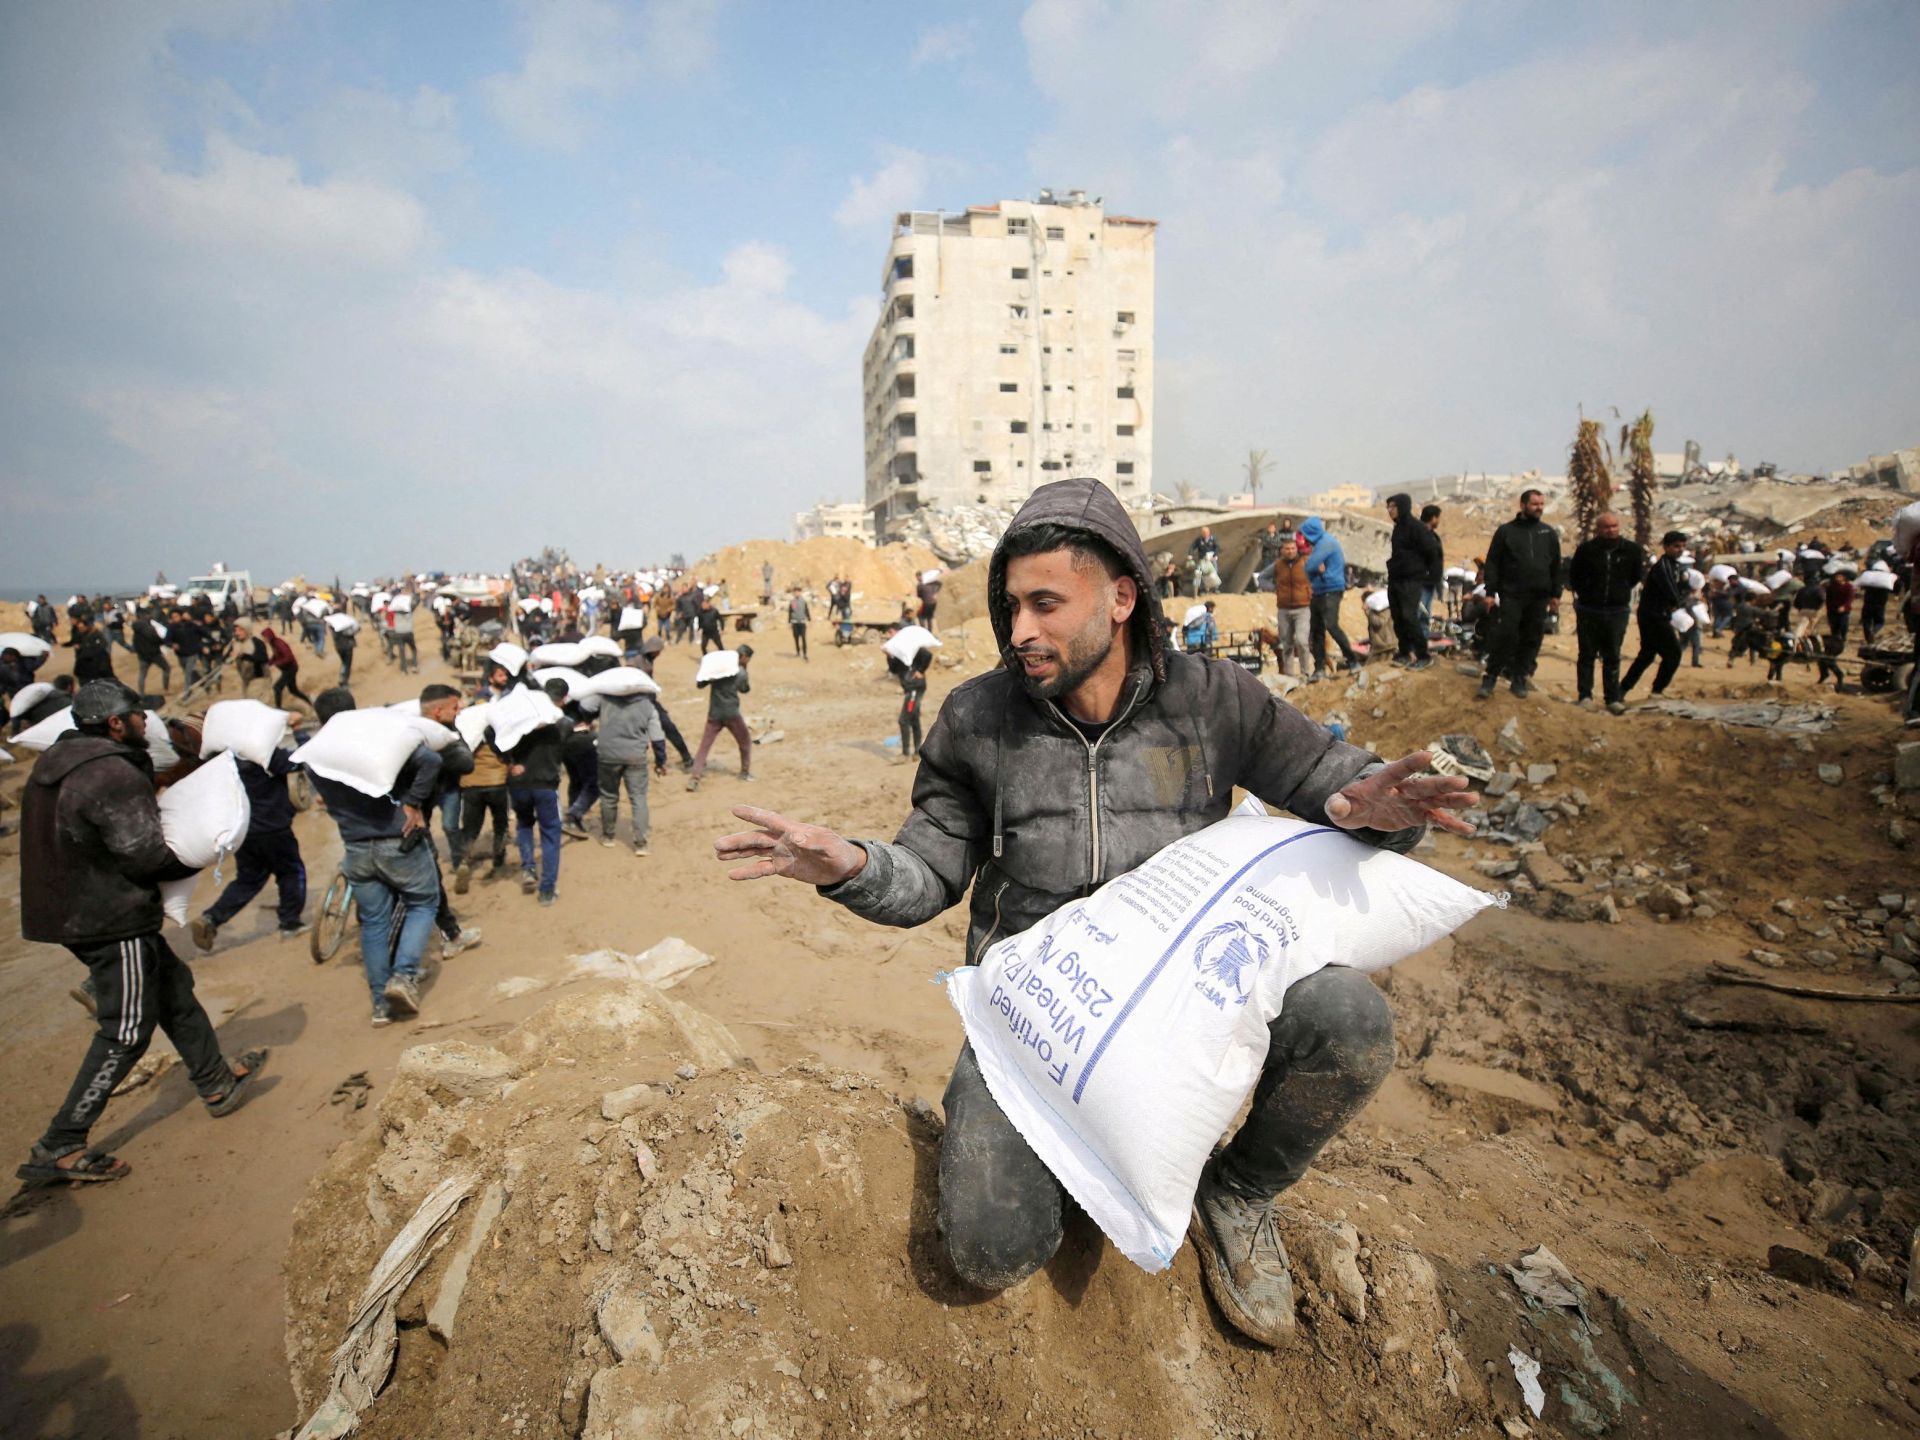 اليوم التالي للحرب على غزّة.. تصورات مختلفة | سياسة – البوكس نيوز